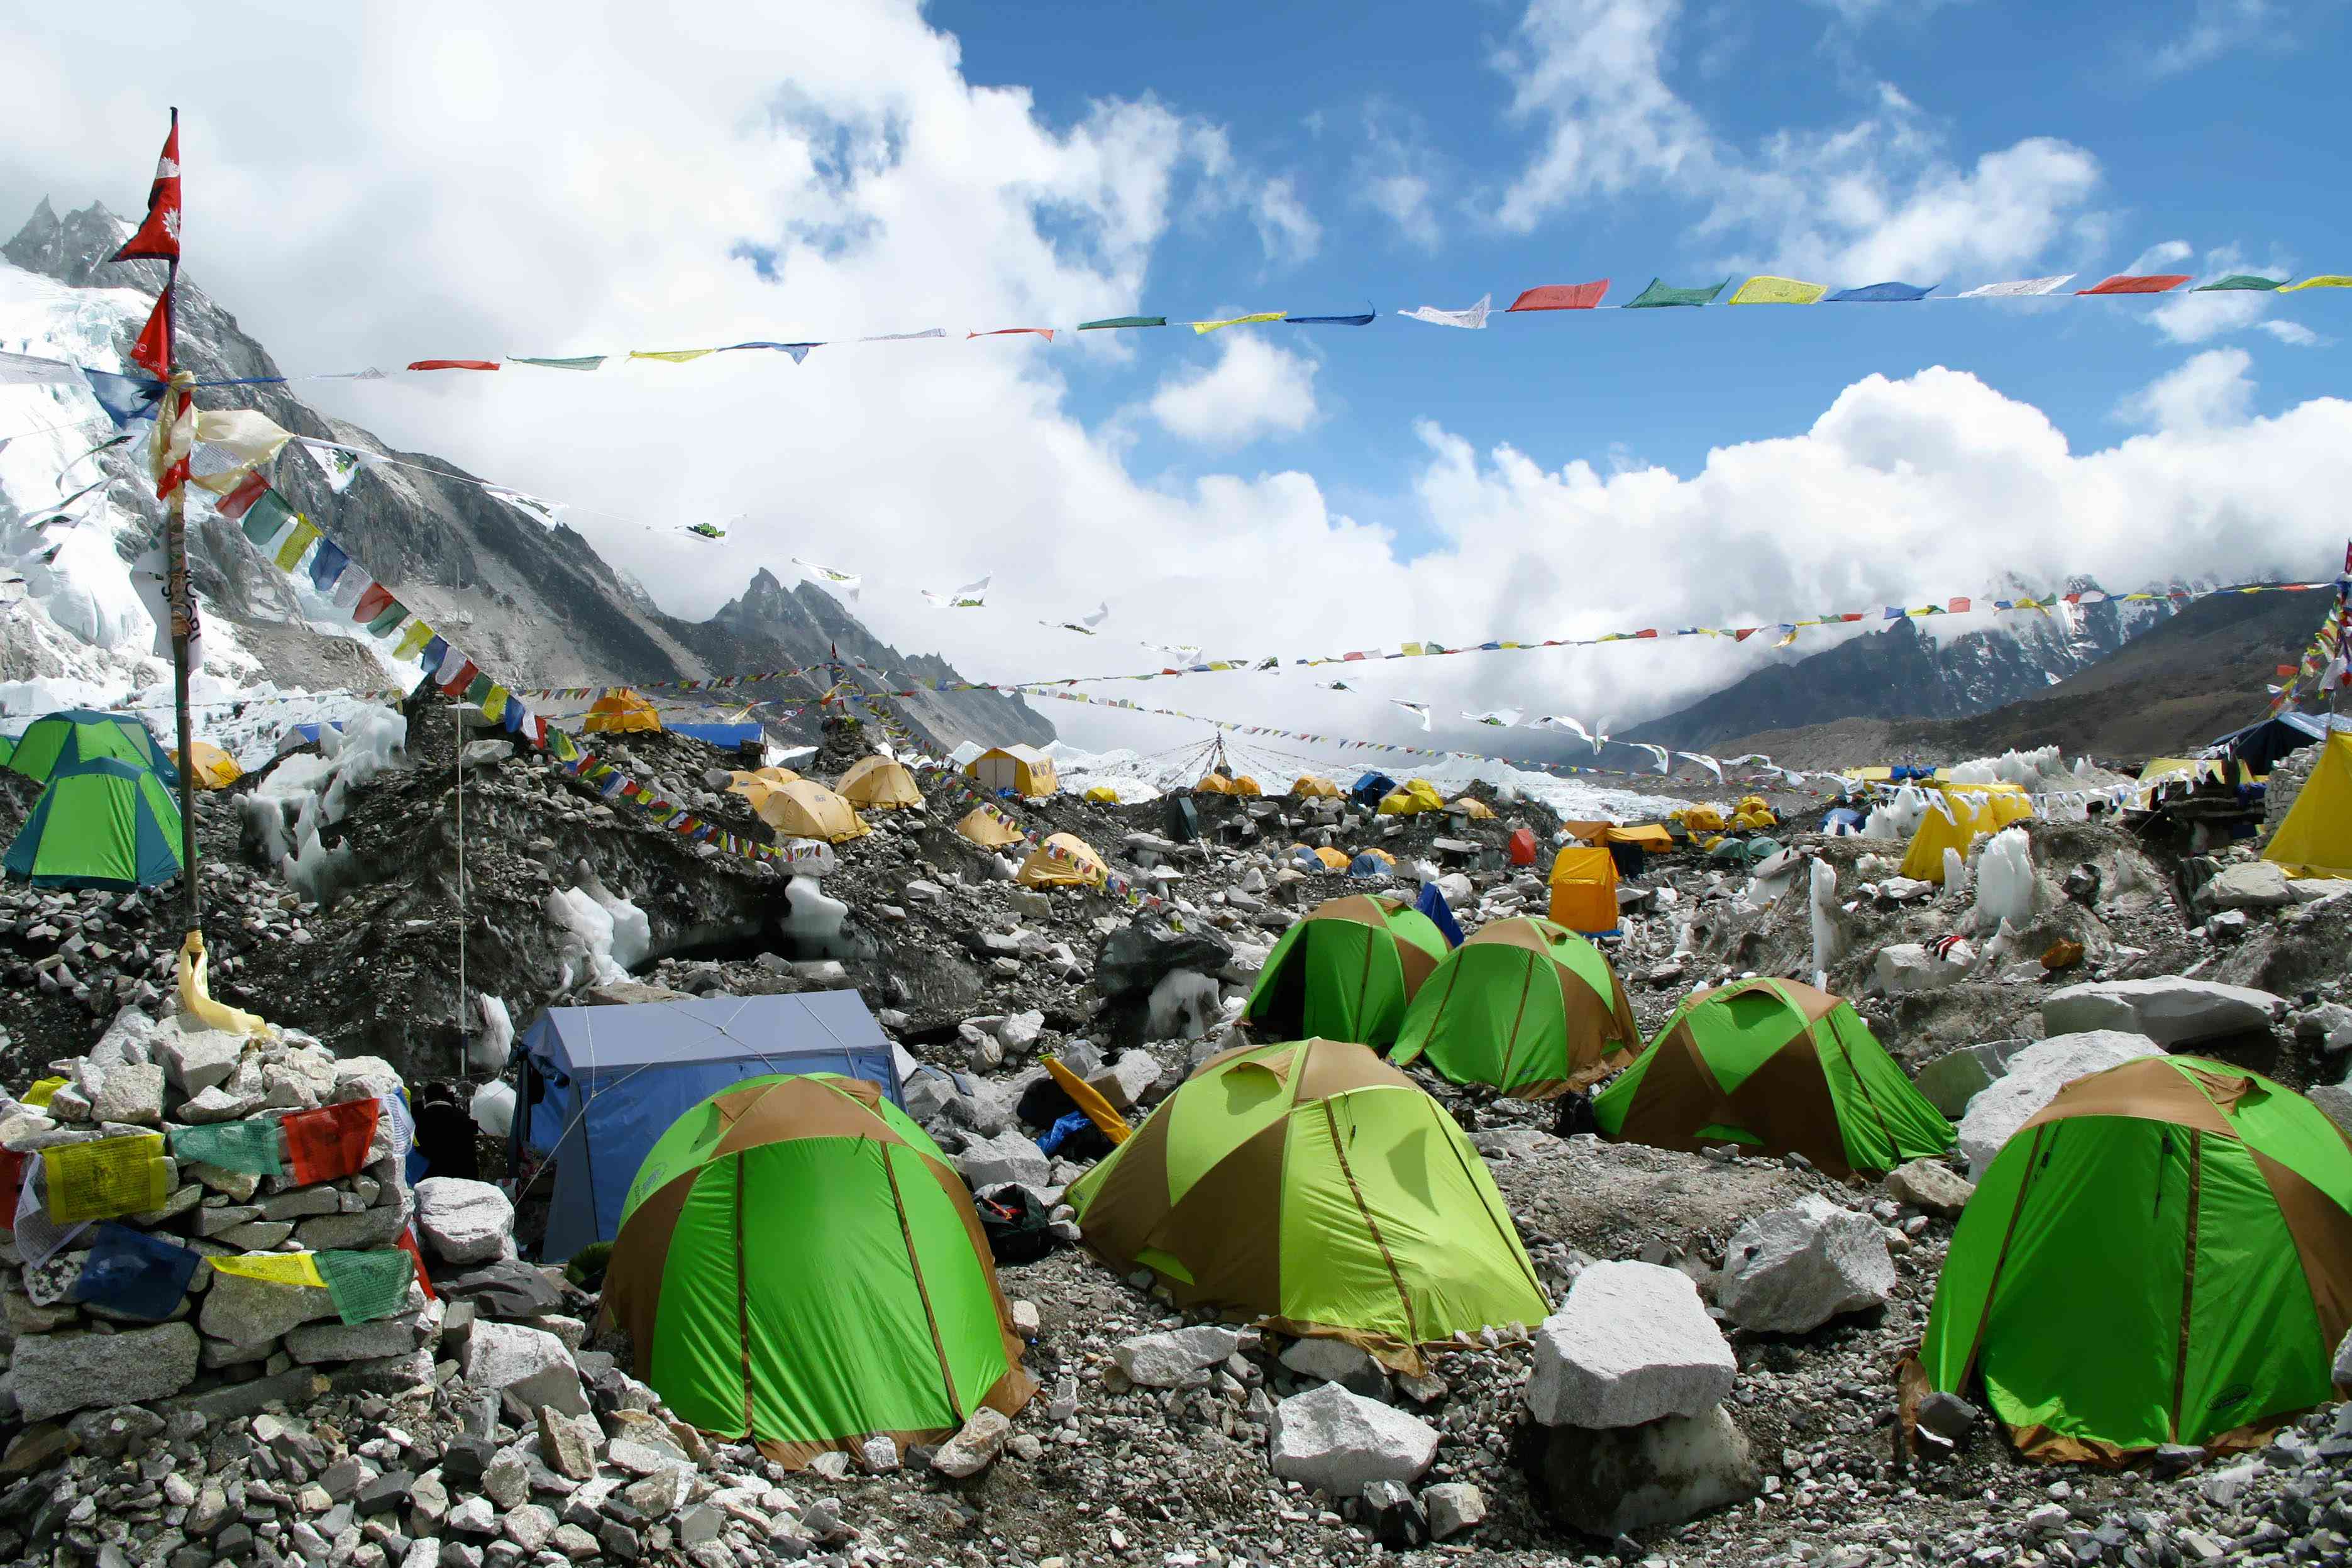 尼泊尔珠穆朗玛峰地区，珠穆朗玛峰大本营的彩色帐篷